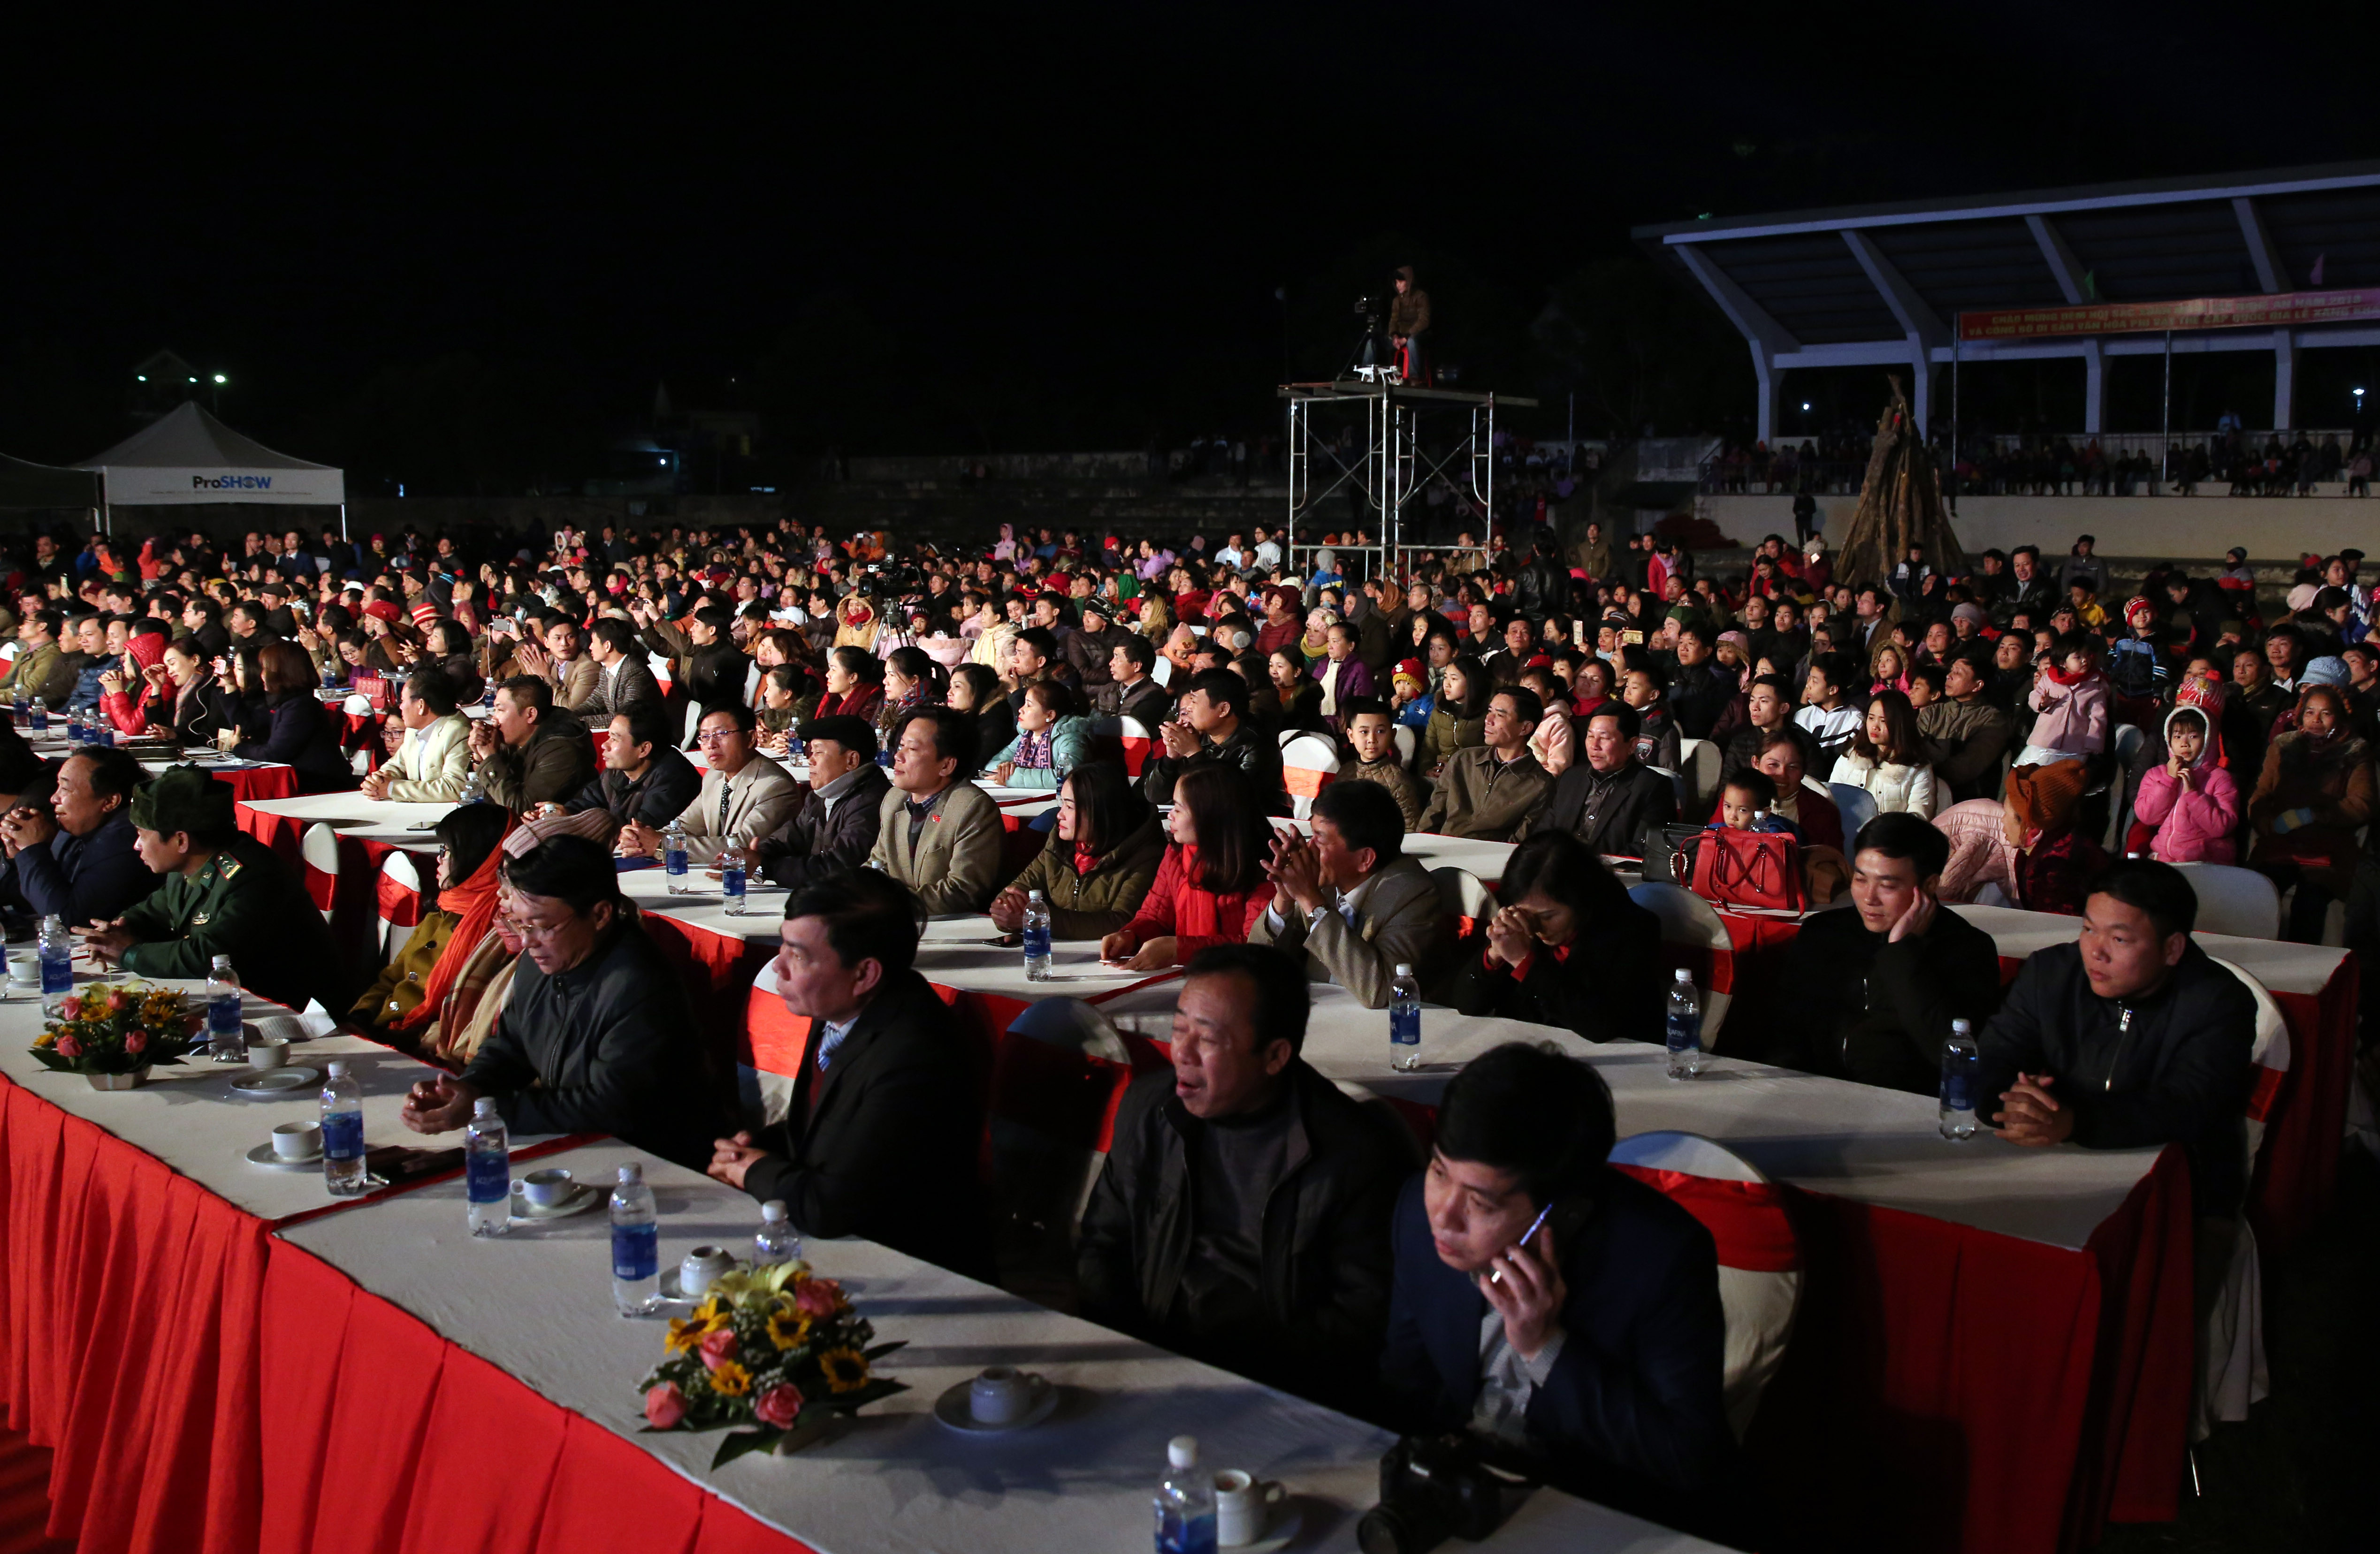 Đông đảo khán giả dự đêm hội sắc xuân miền Tây 2018. Ảnh: Hữu Vi